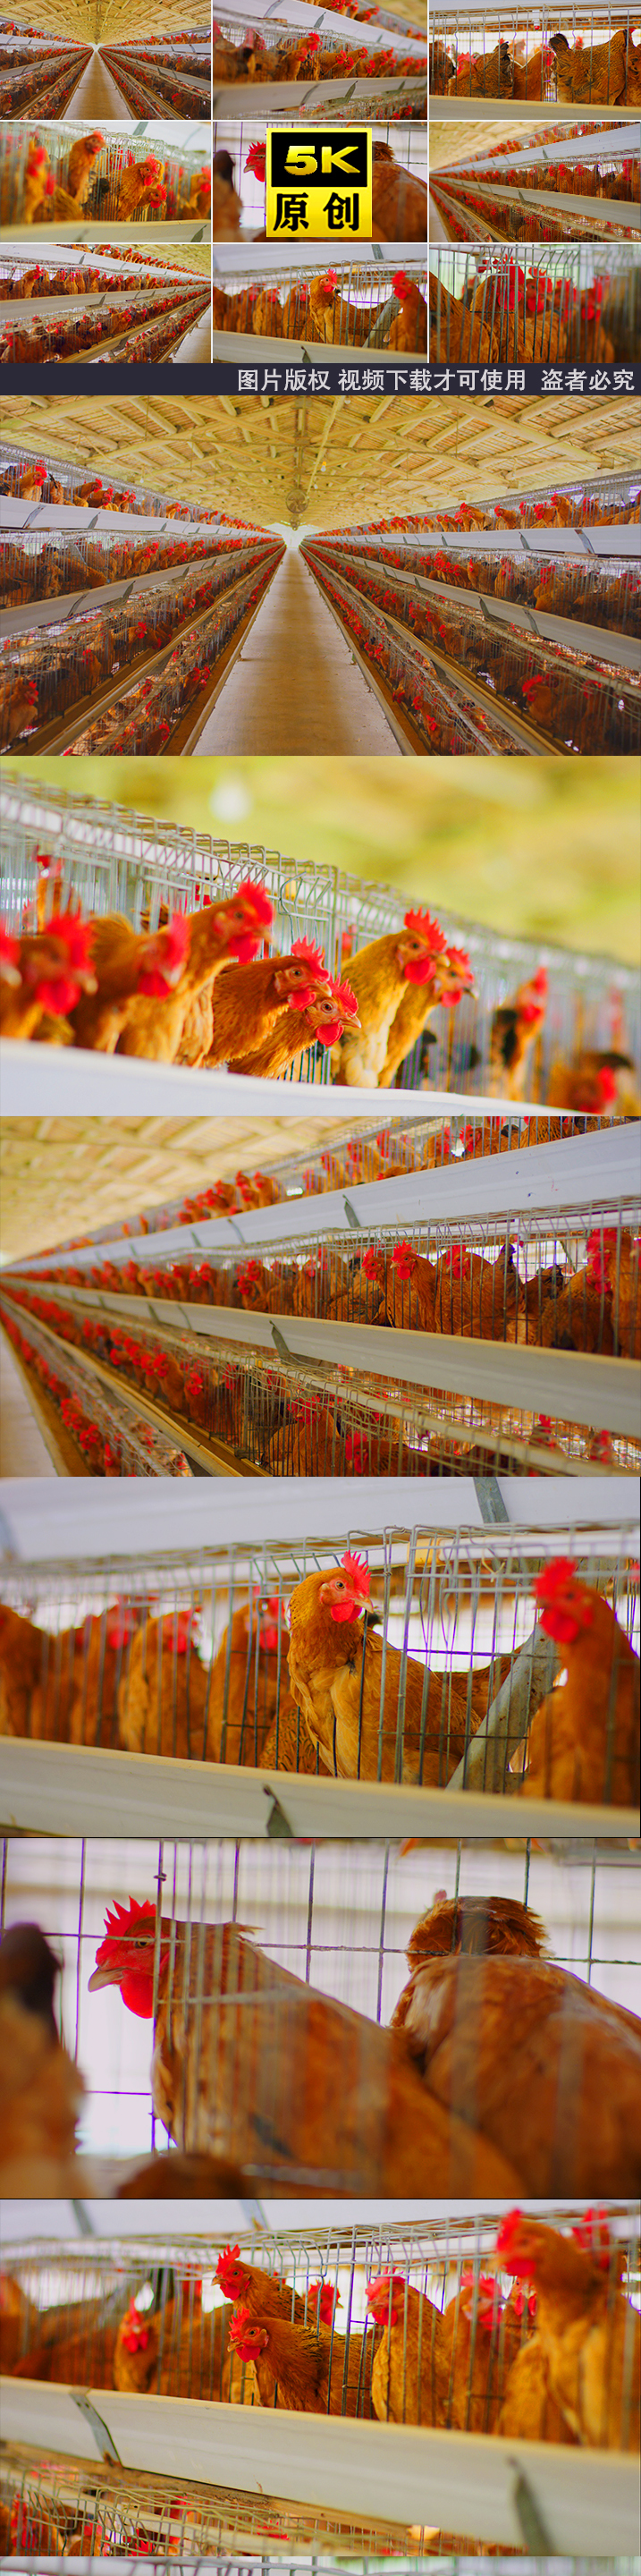 鸡养鸡鸡养殖养鸡厂农业文昌鸡鸡肉鸡养鸡场